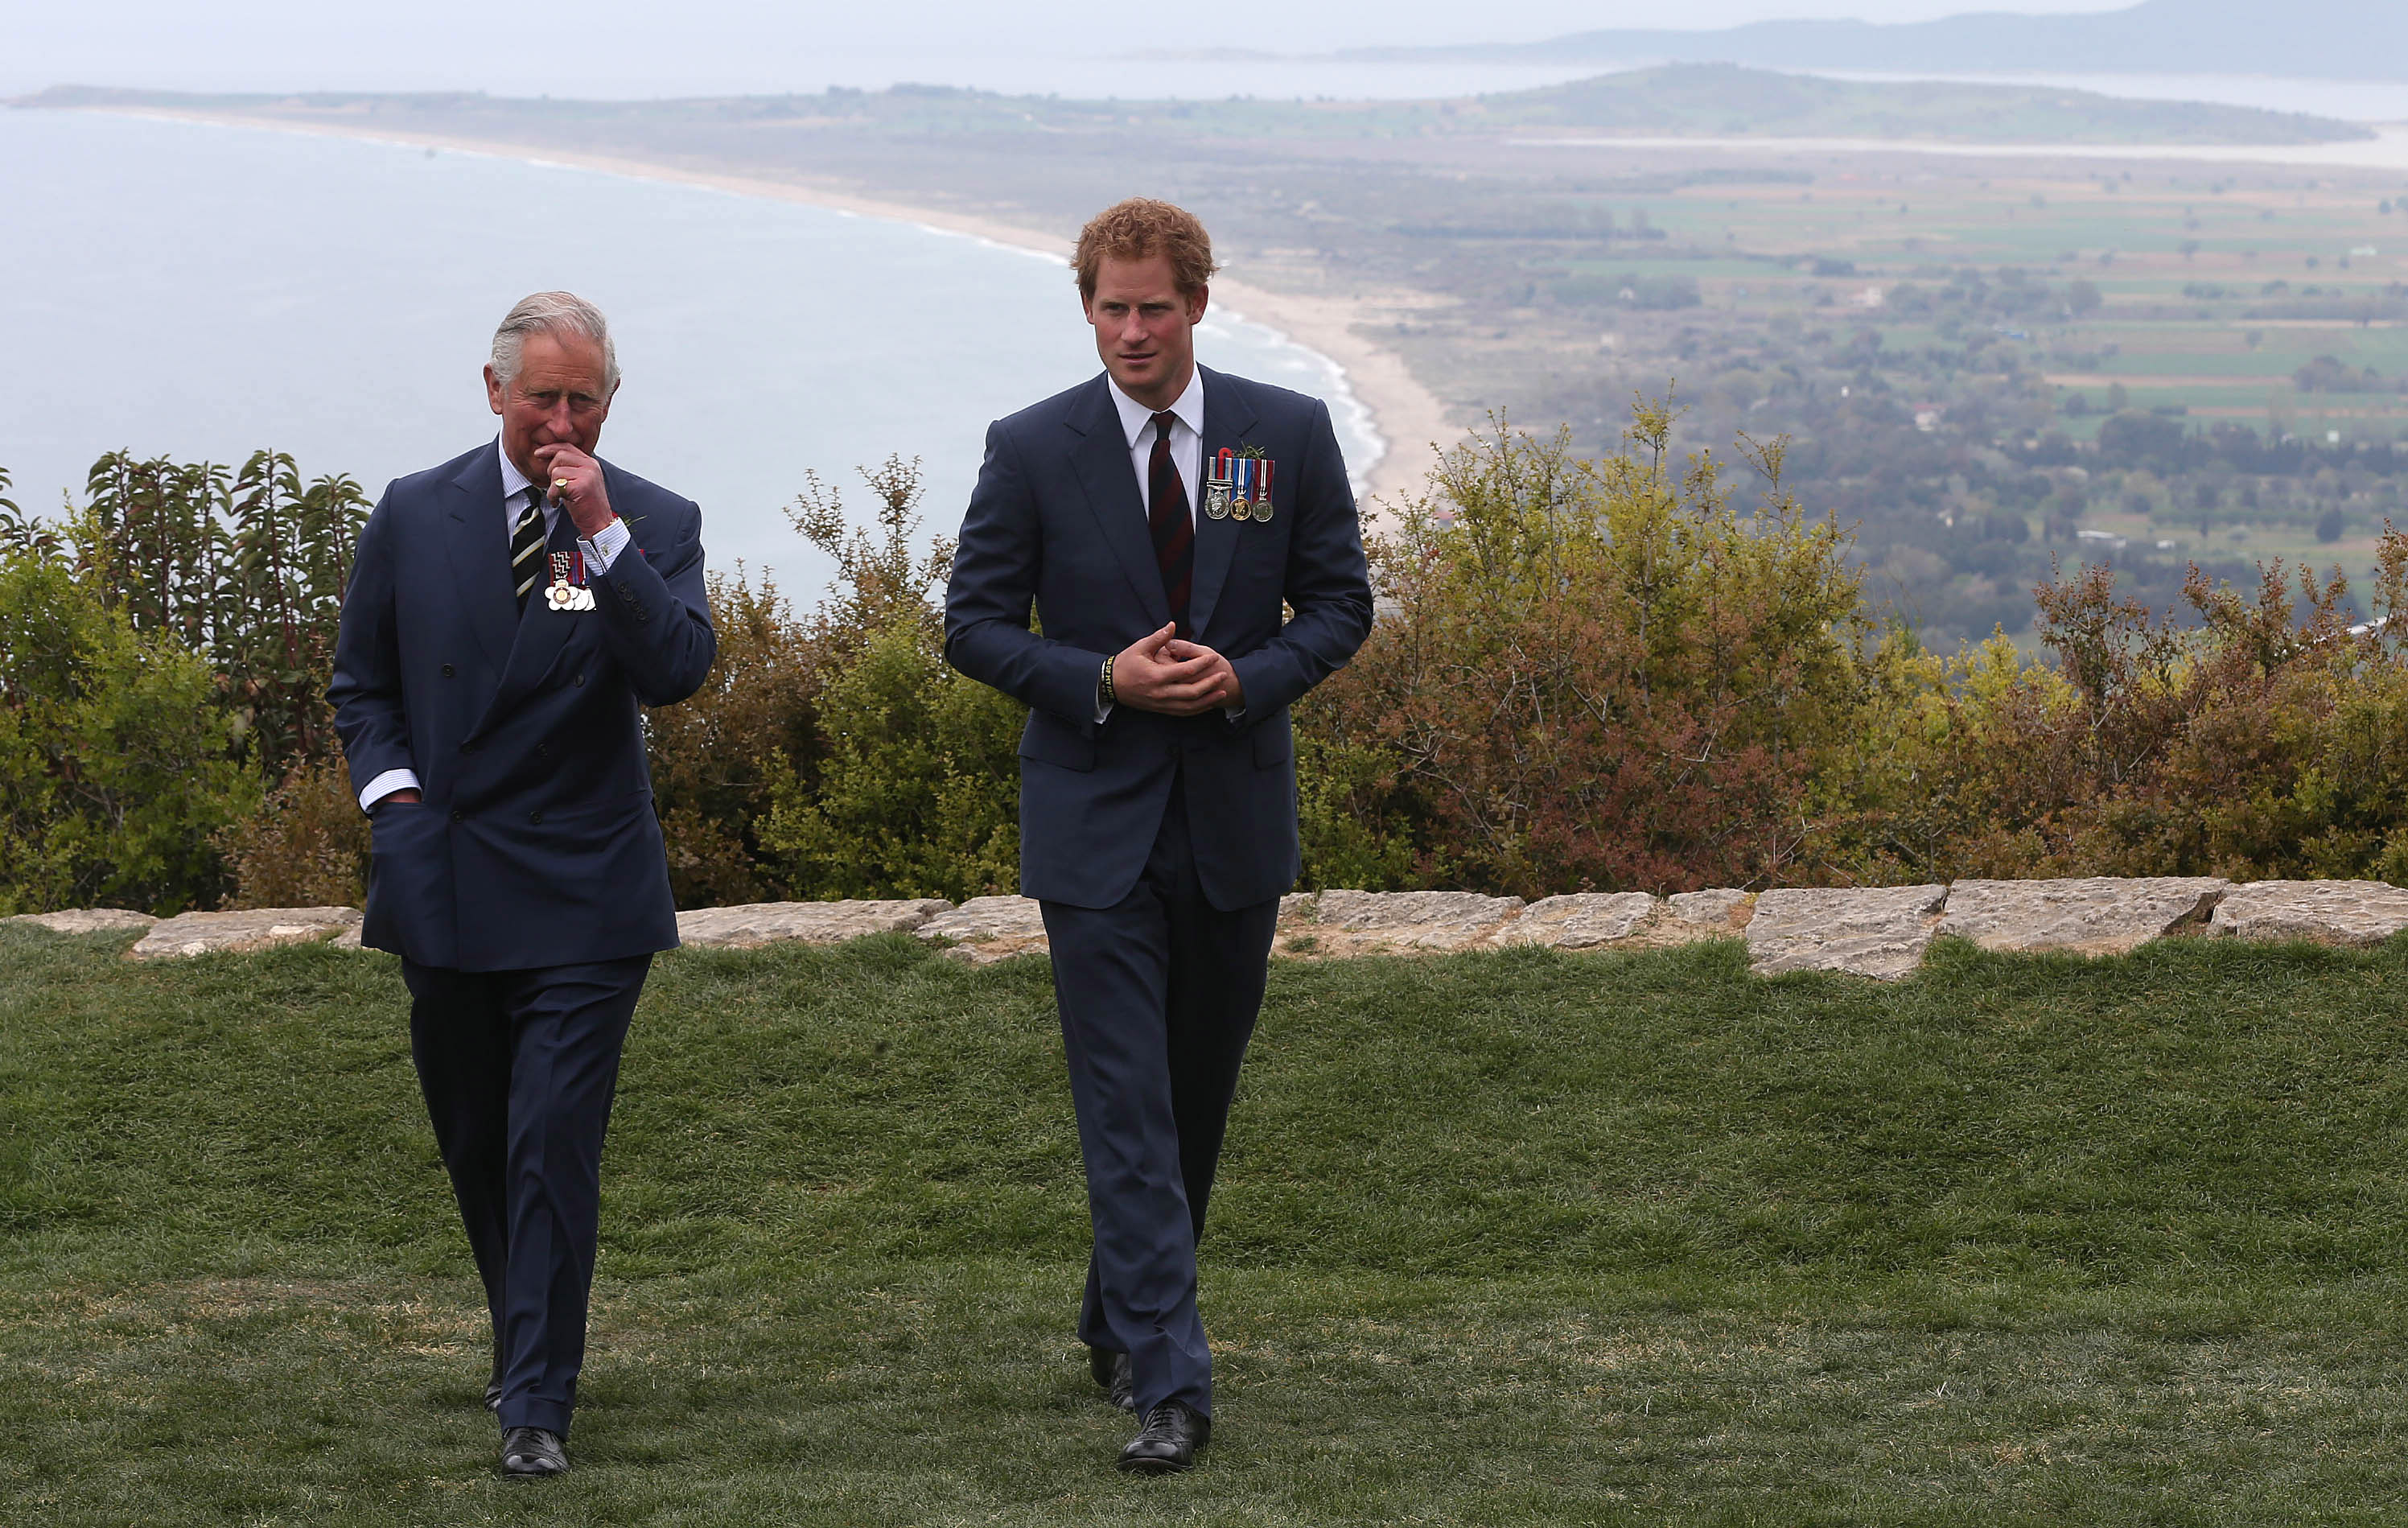 König Charles III. und Prinz Harry während der Gedenkfeierlichkeiten zum hundertjährigen Jubiläum des Gallipoli-Feldzugs | Quelle: Getty Images